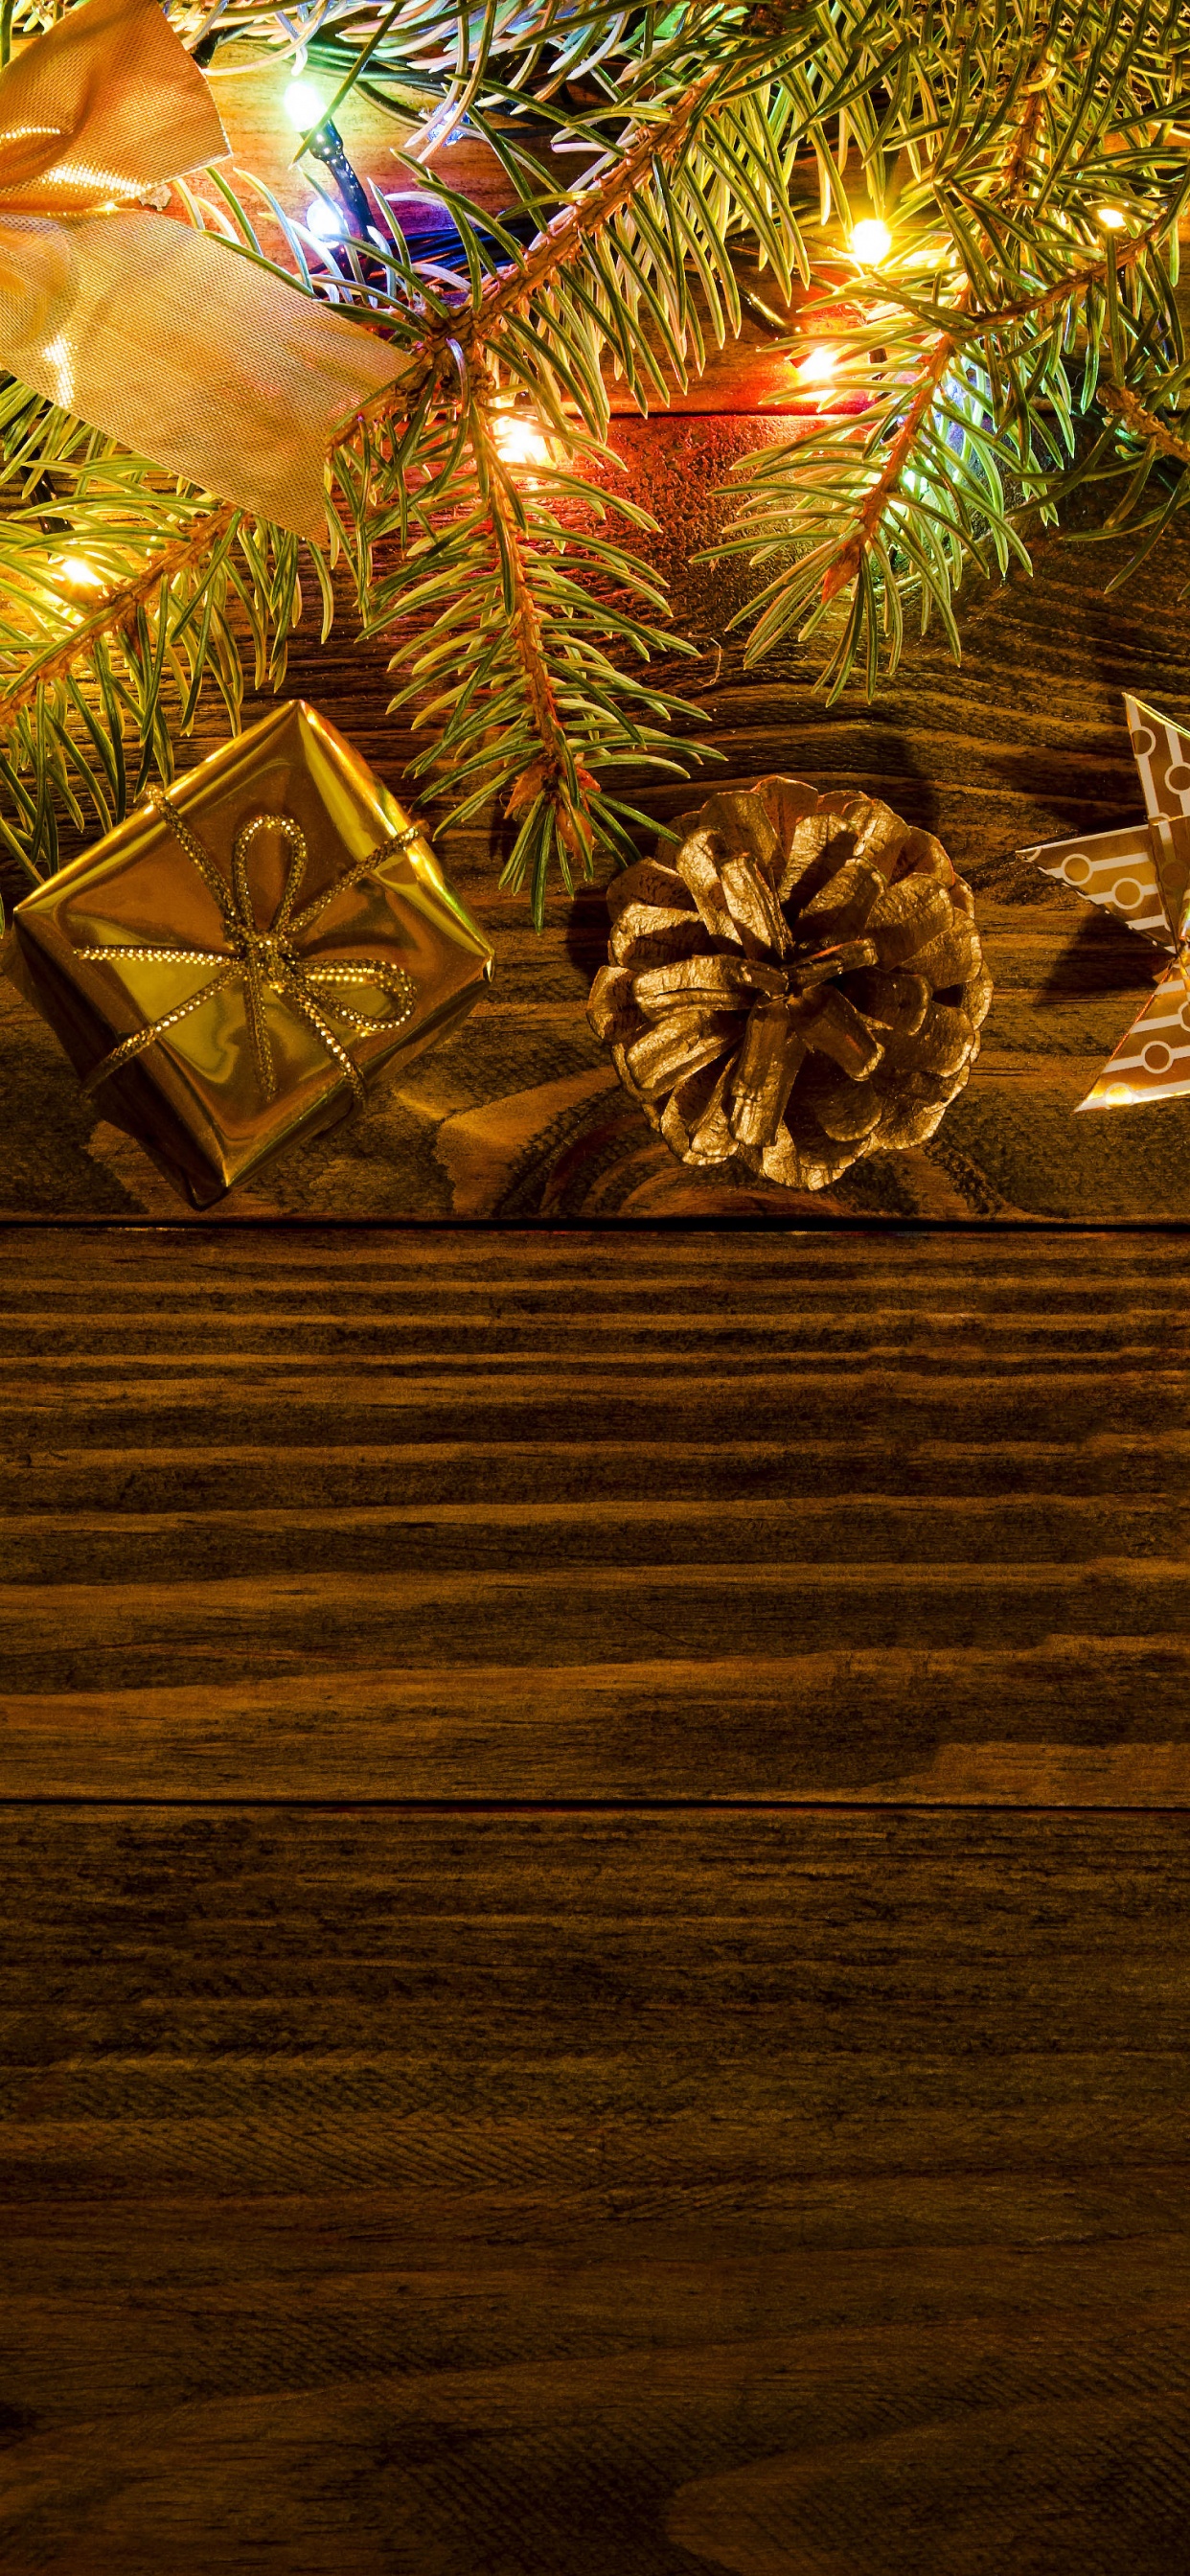 Nochevieja, El Día De Navidad, Navidad, Decoración de la Navidad, Luces de Navidad. Wallpaper in 1242x2688 Resolution